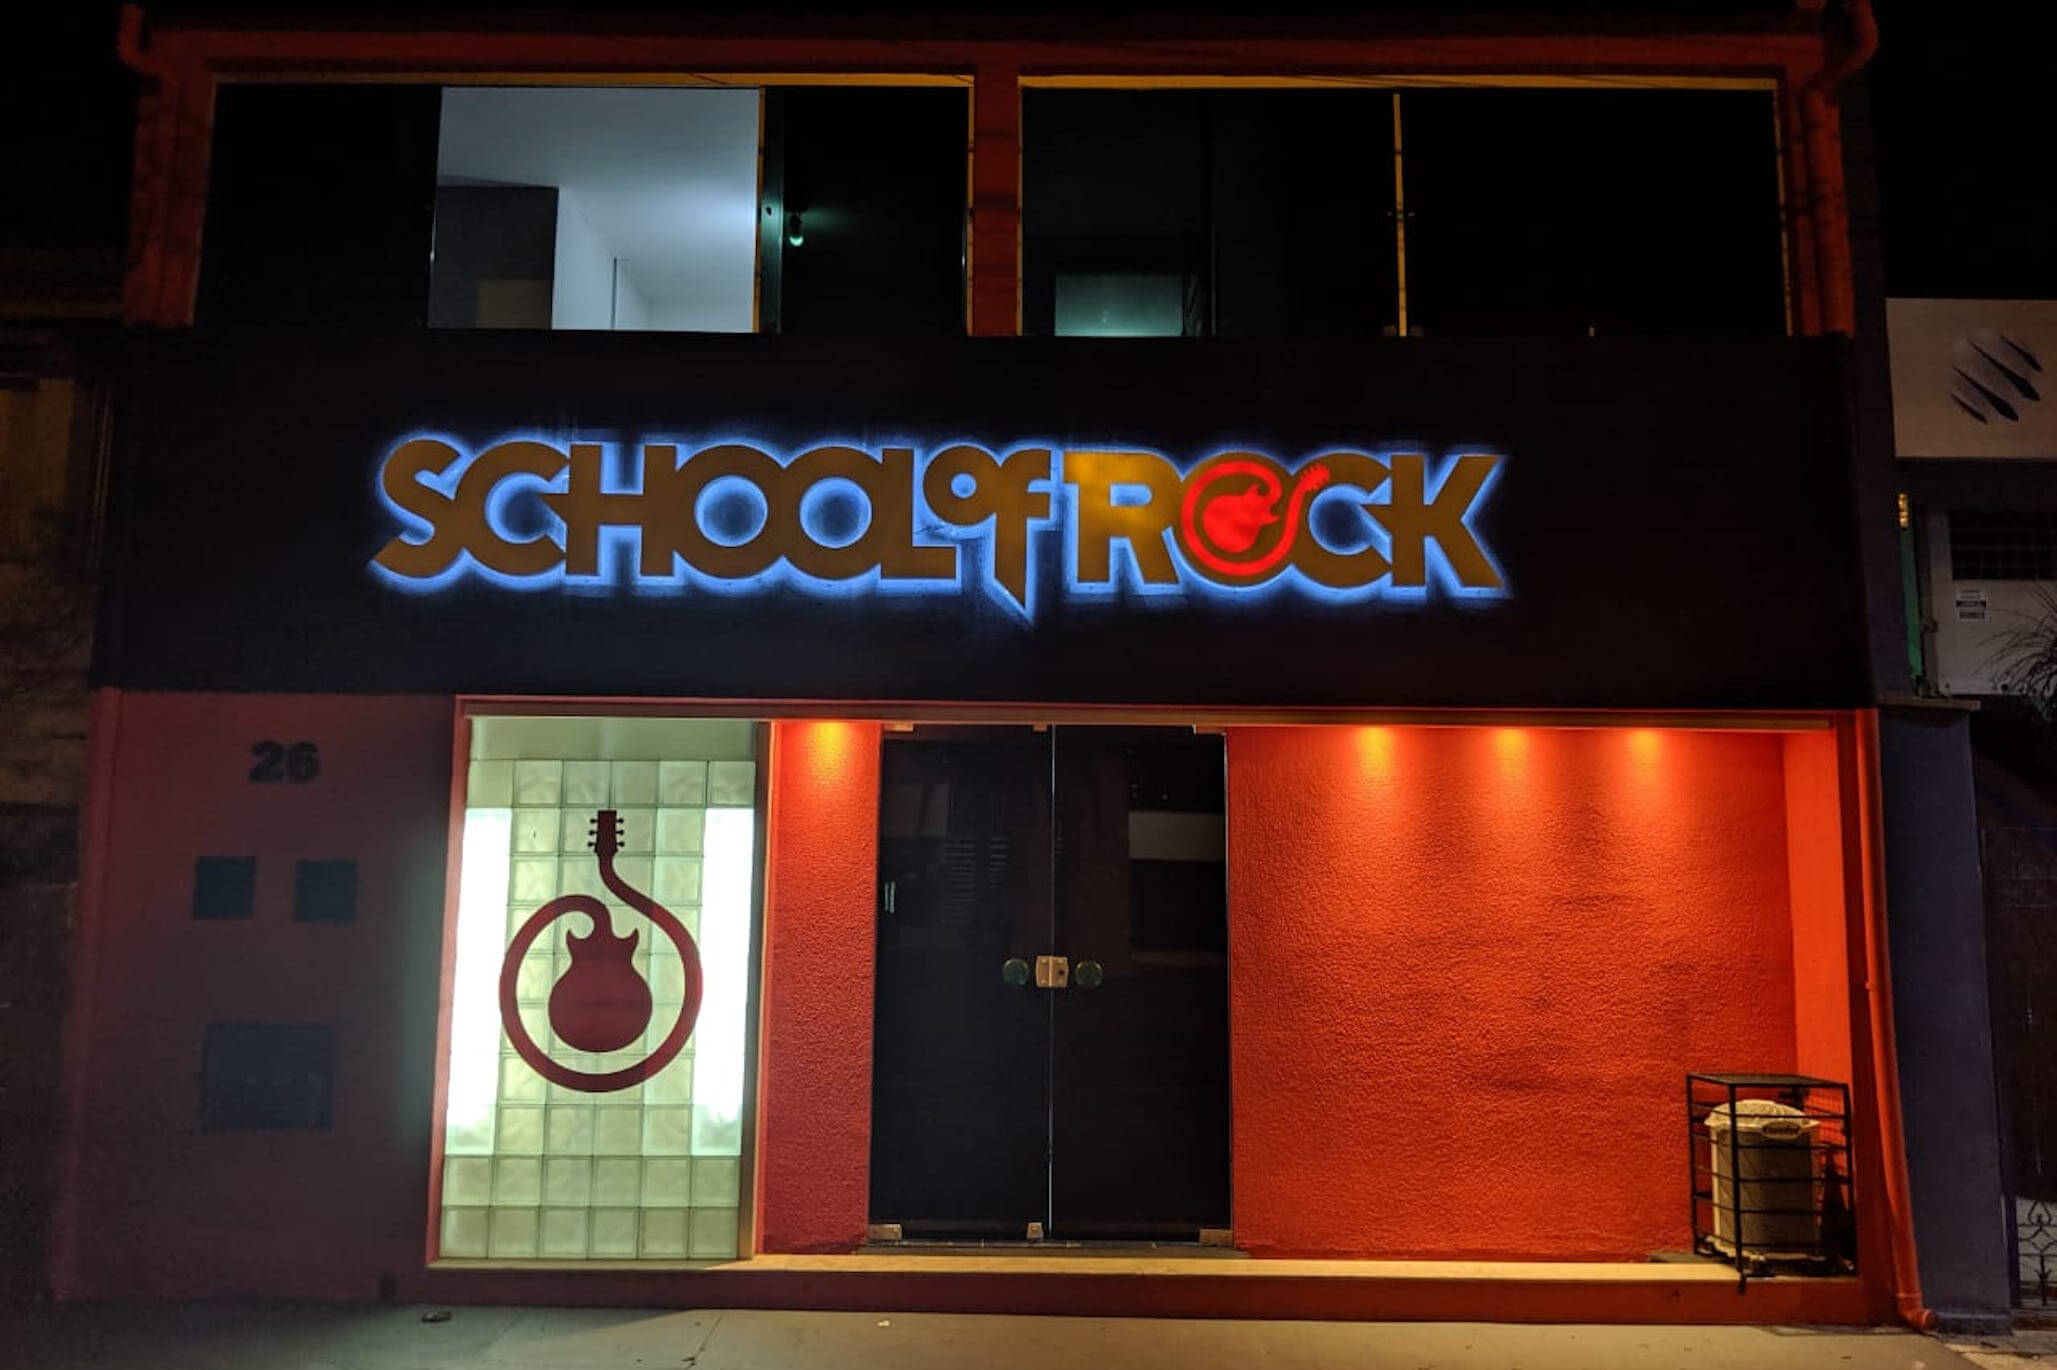 School of Rock Brooklin-Campo Belo - Você sabia? Em 1998, foi